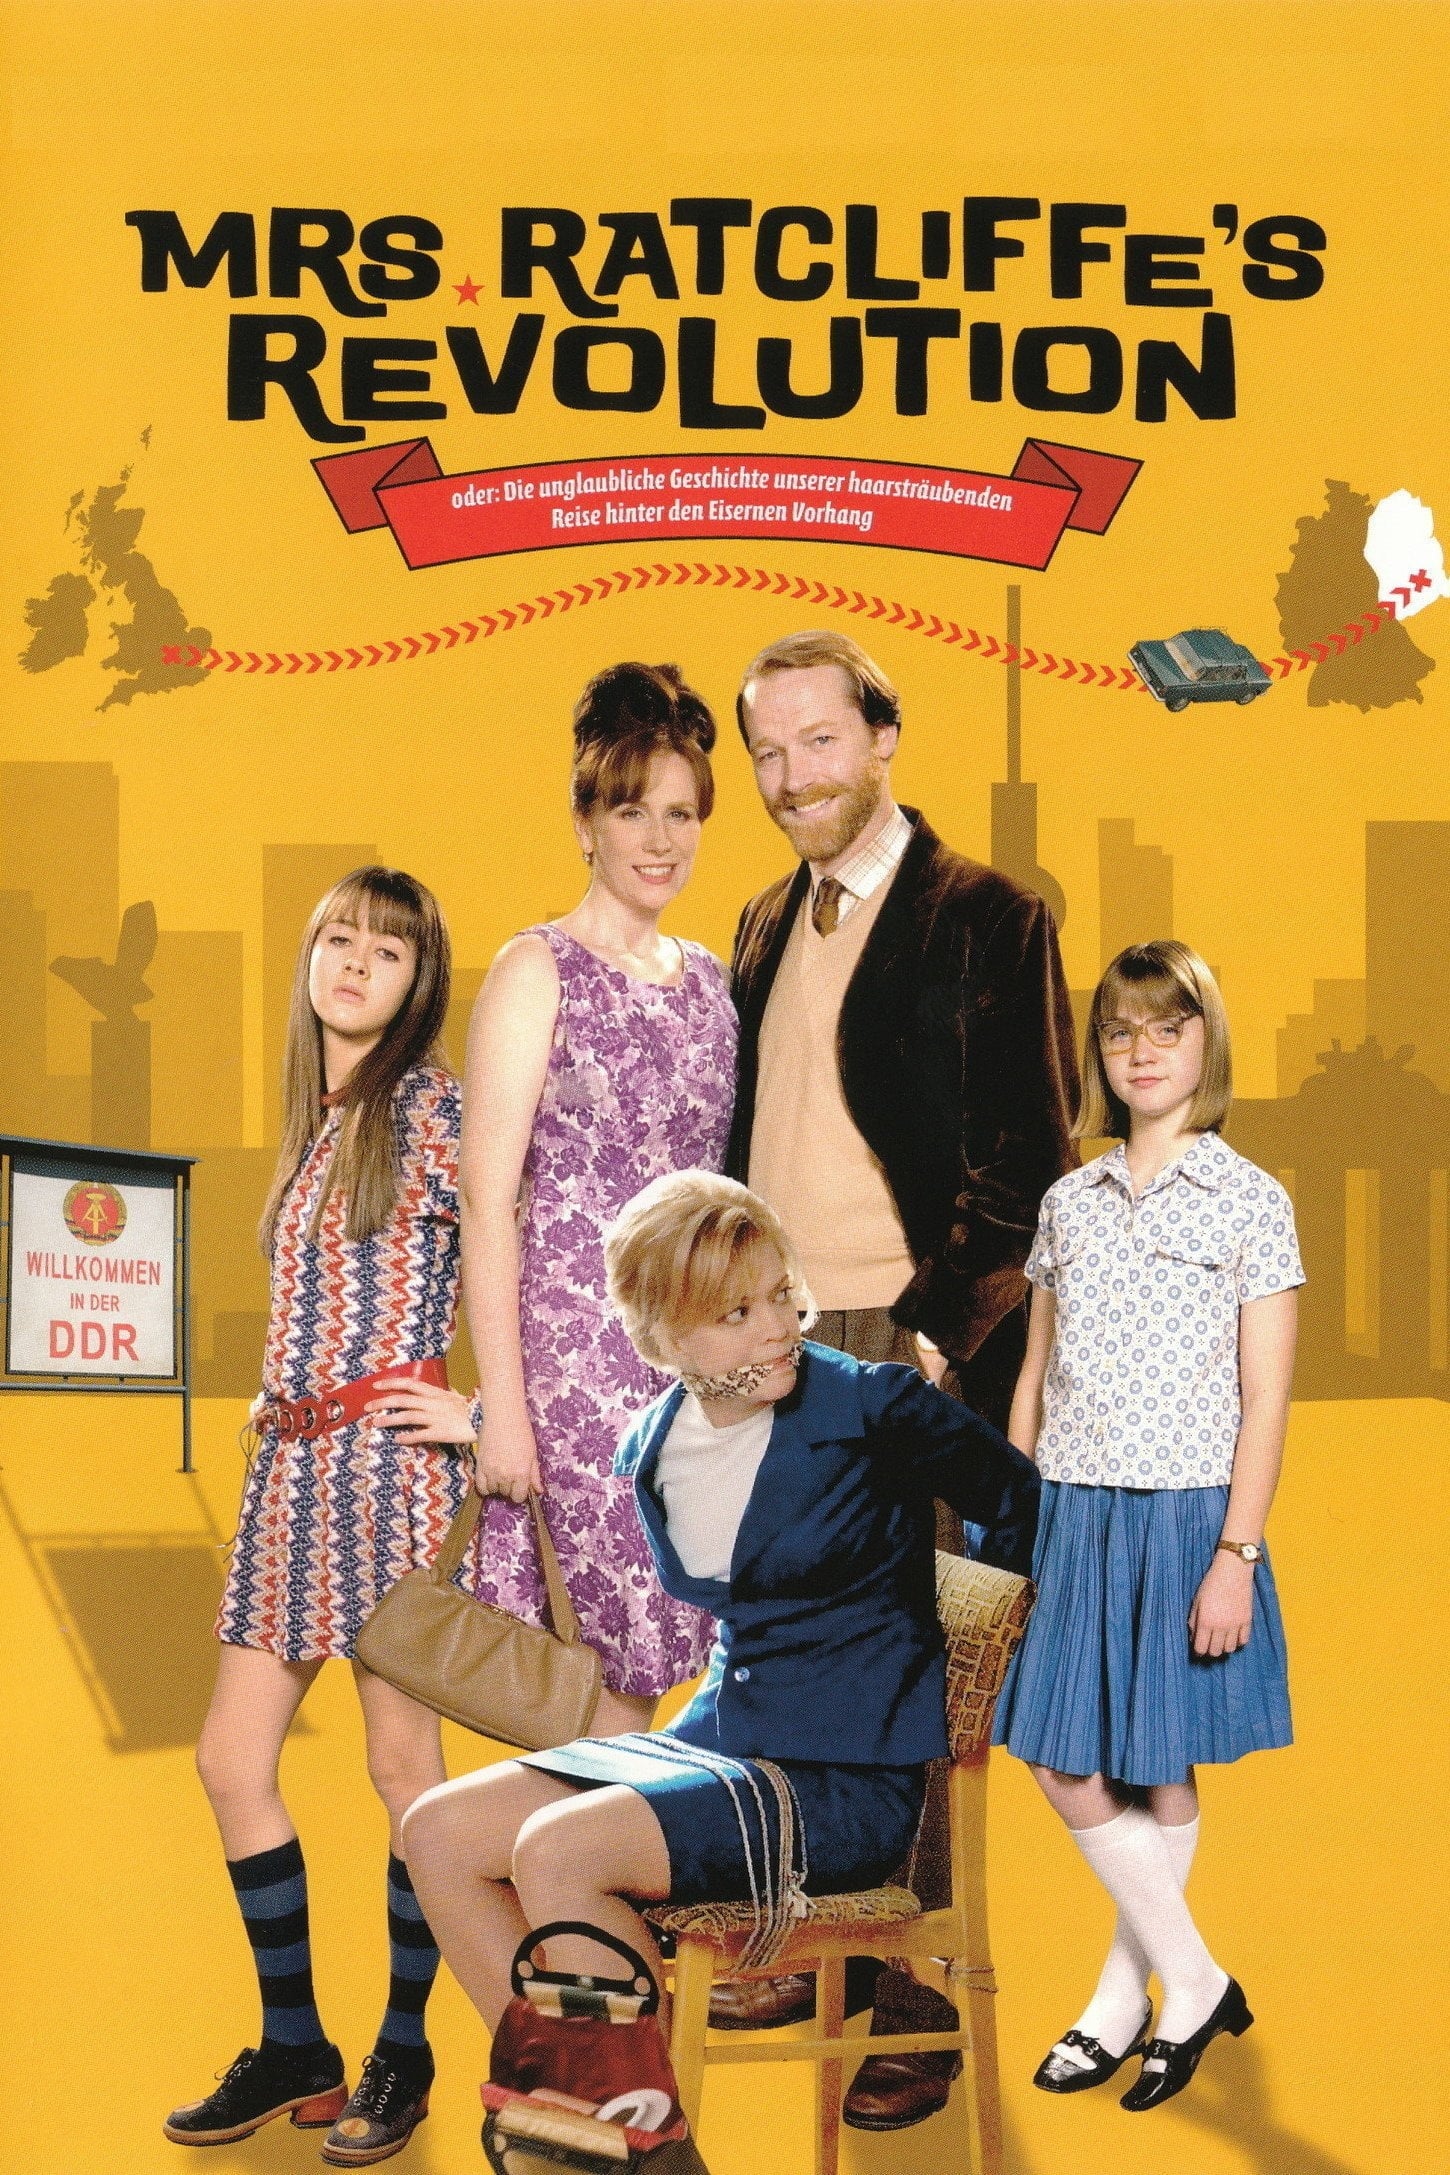 La revolución de la Sra. Ratcliffe